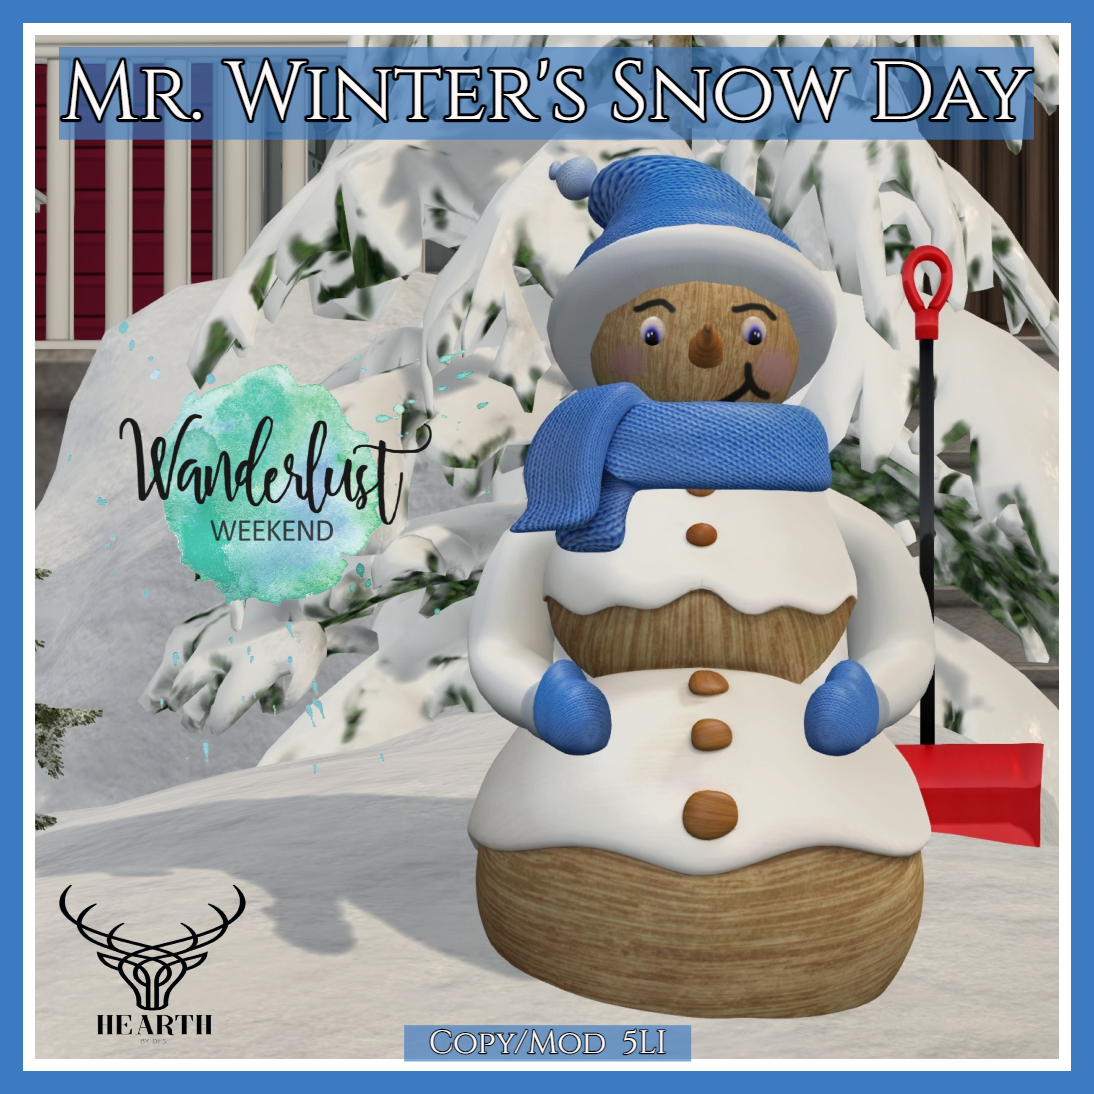 Hearth – Mr. Winter’s Snow Day